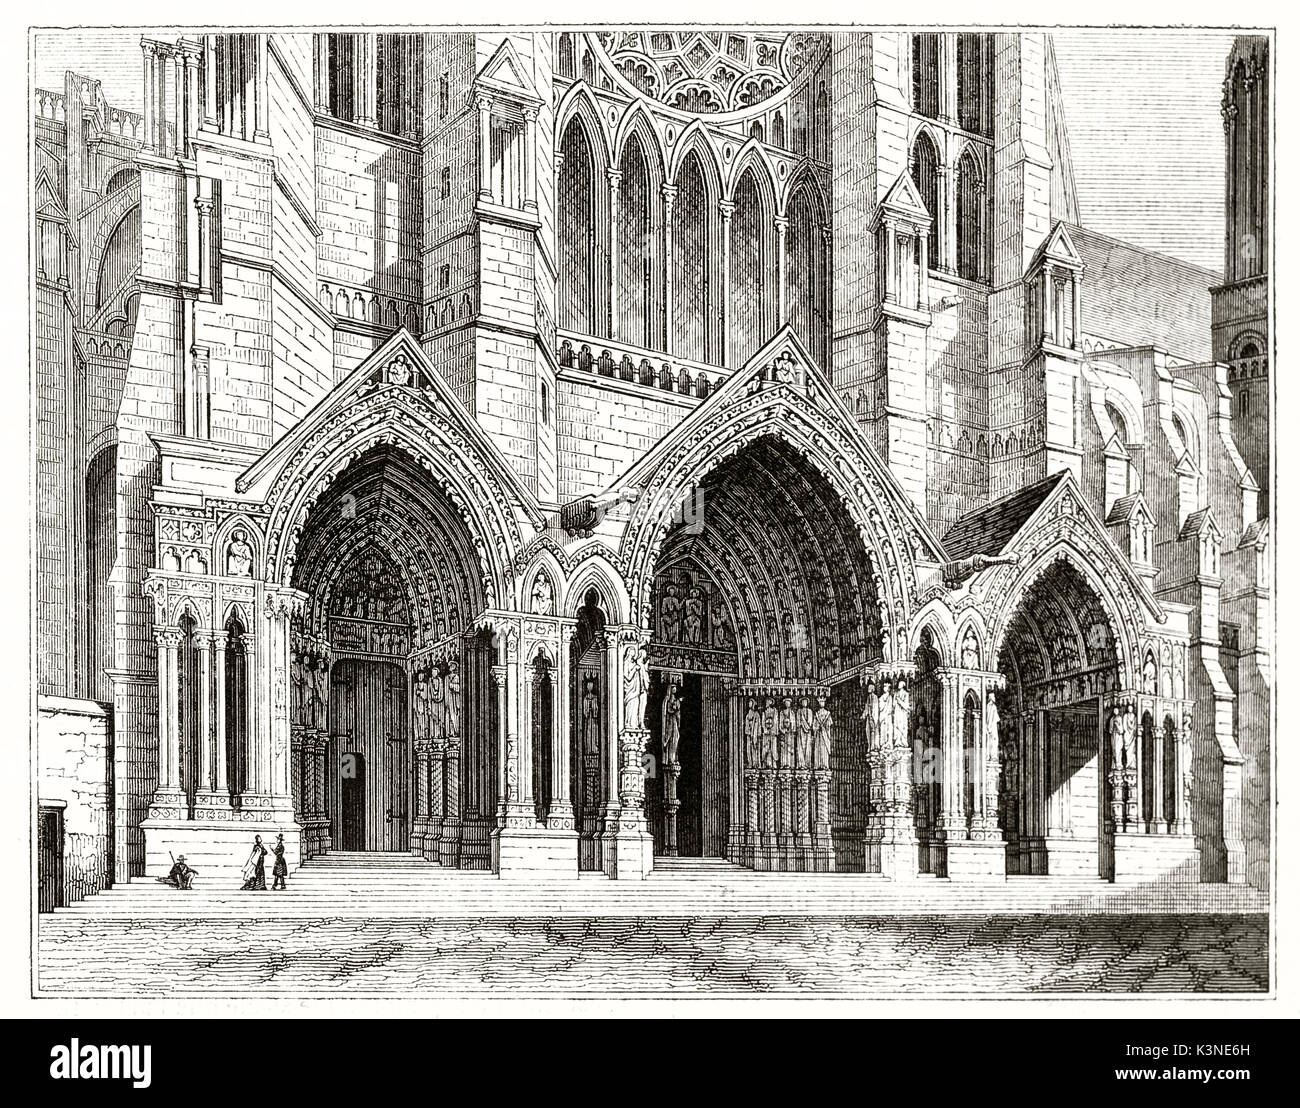 Vista anterior del norte del gran portal con arcos apuntados ricamente decorados de la catedral de Chartres en Francia. Creado por Andrew mejor y Leloir, publ. en el Magasin pintoresco París 1839 Foto de stock